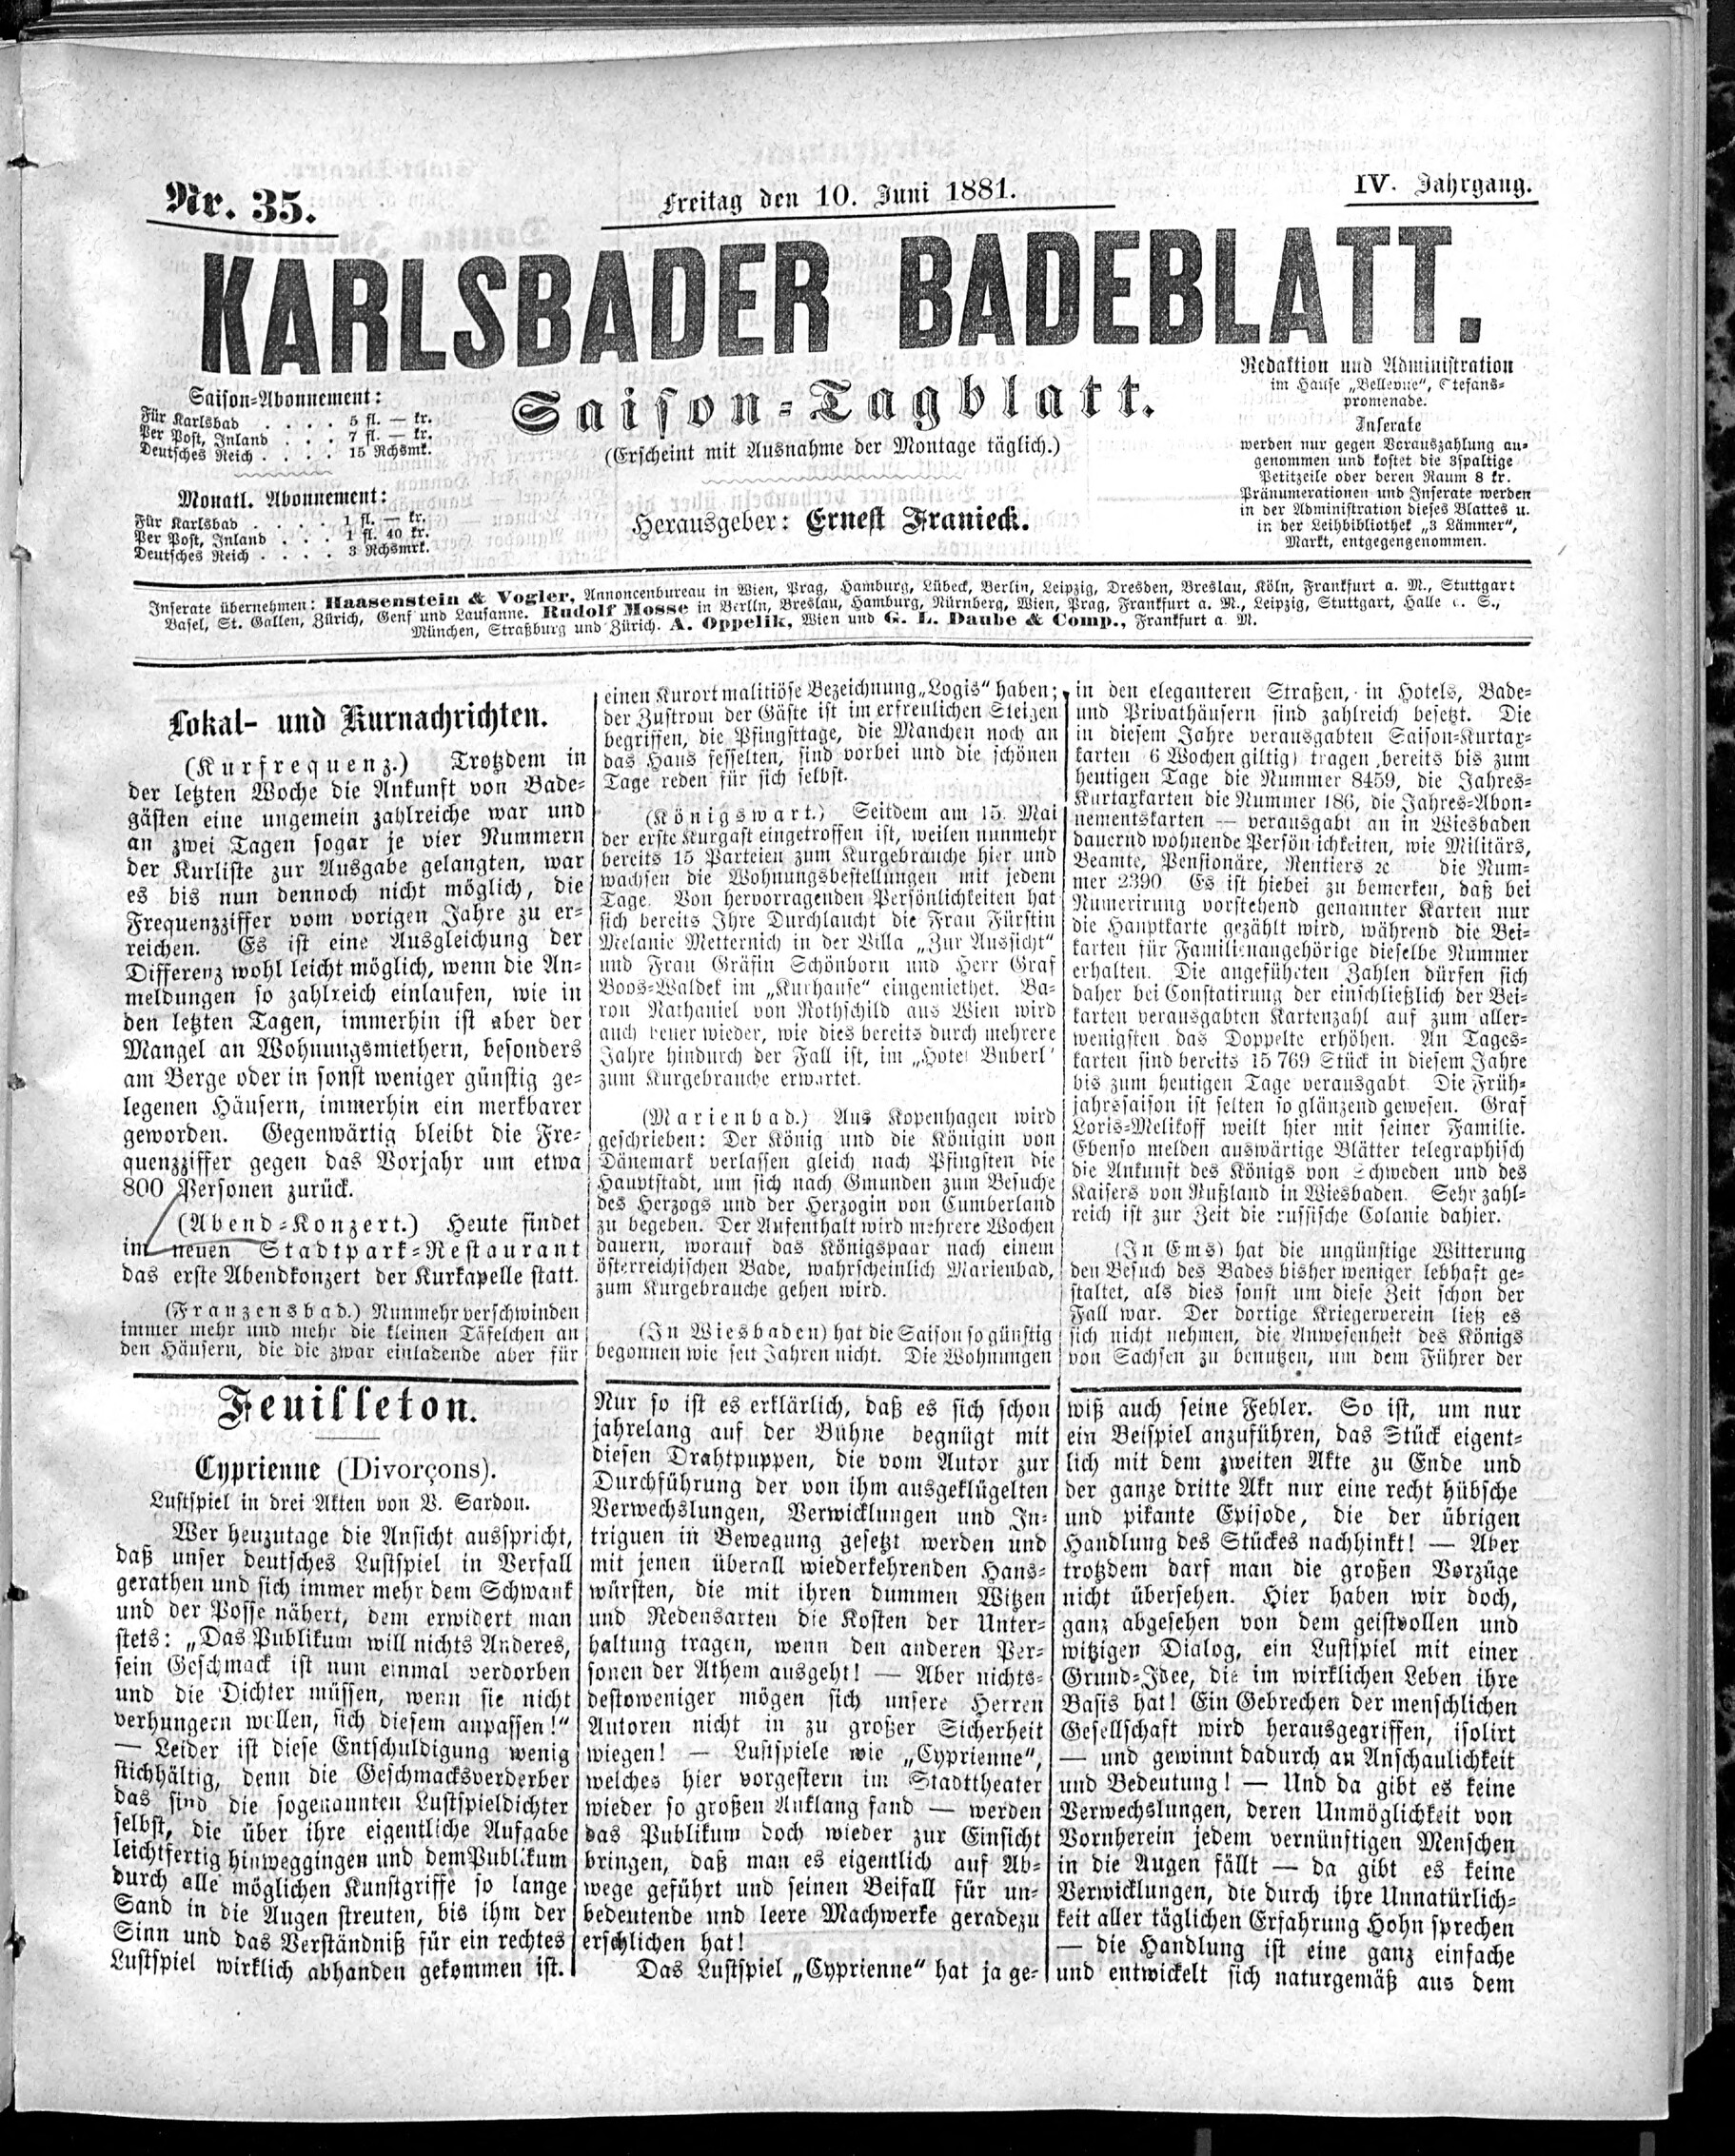 1. karlsbader-badeblatt-1881-06-10-n35_0745